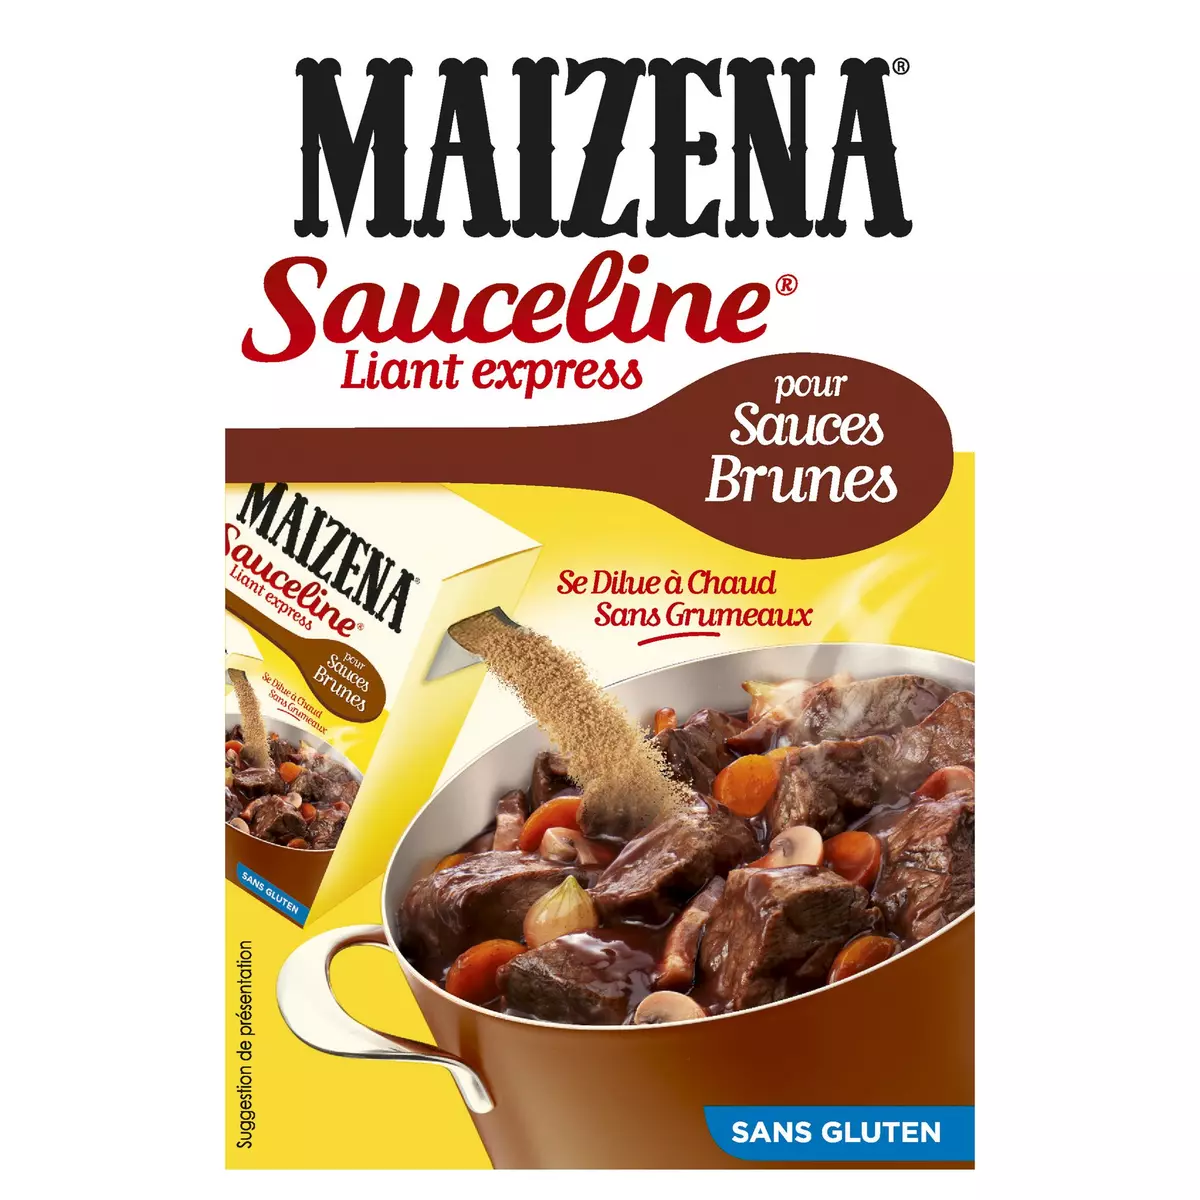 MAIZENA Sauceline liant express pour sauces brunes sans gluten 250g